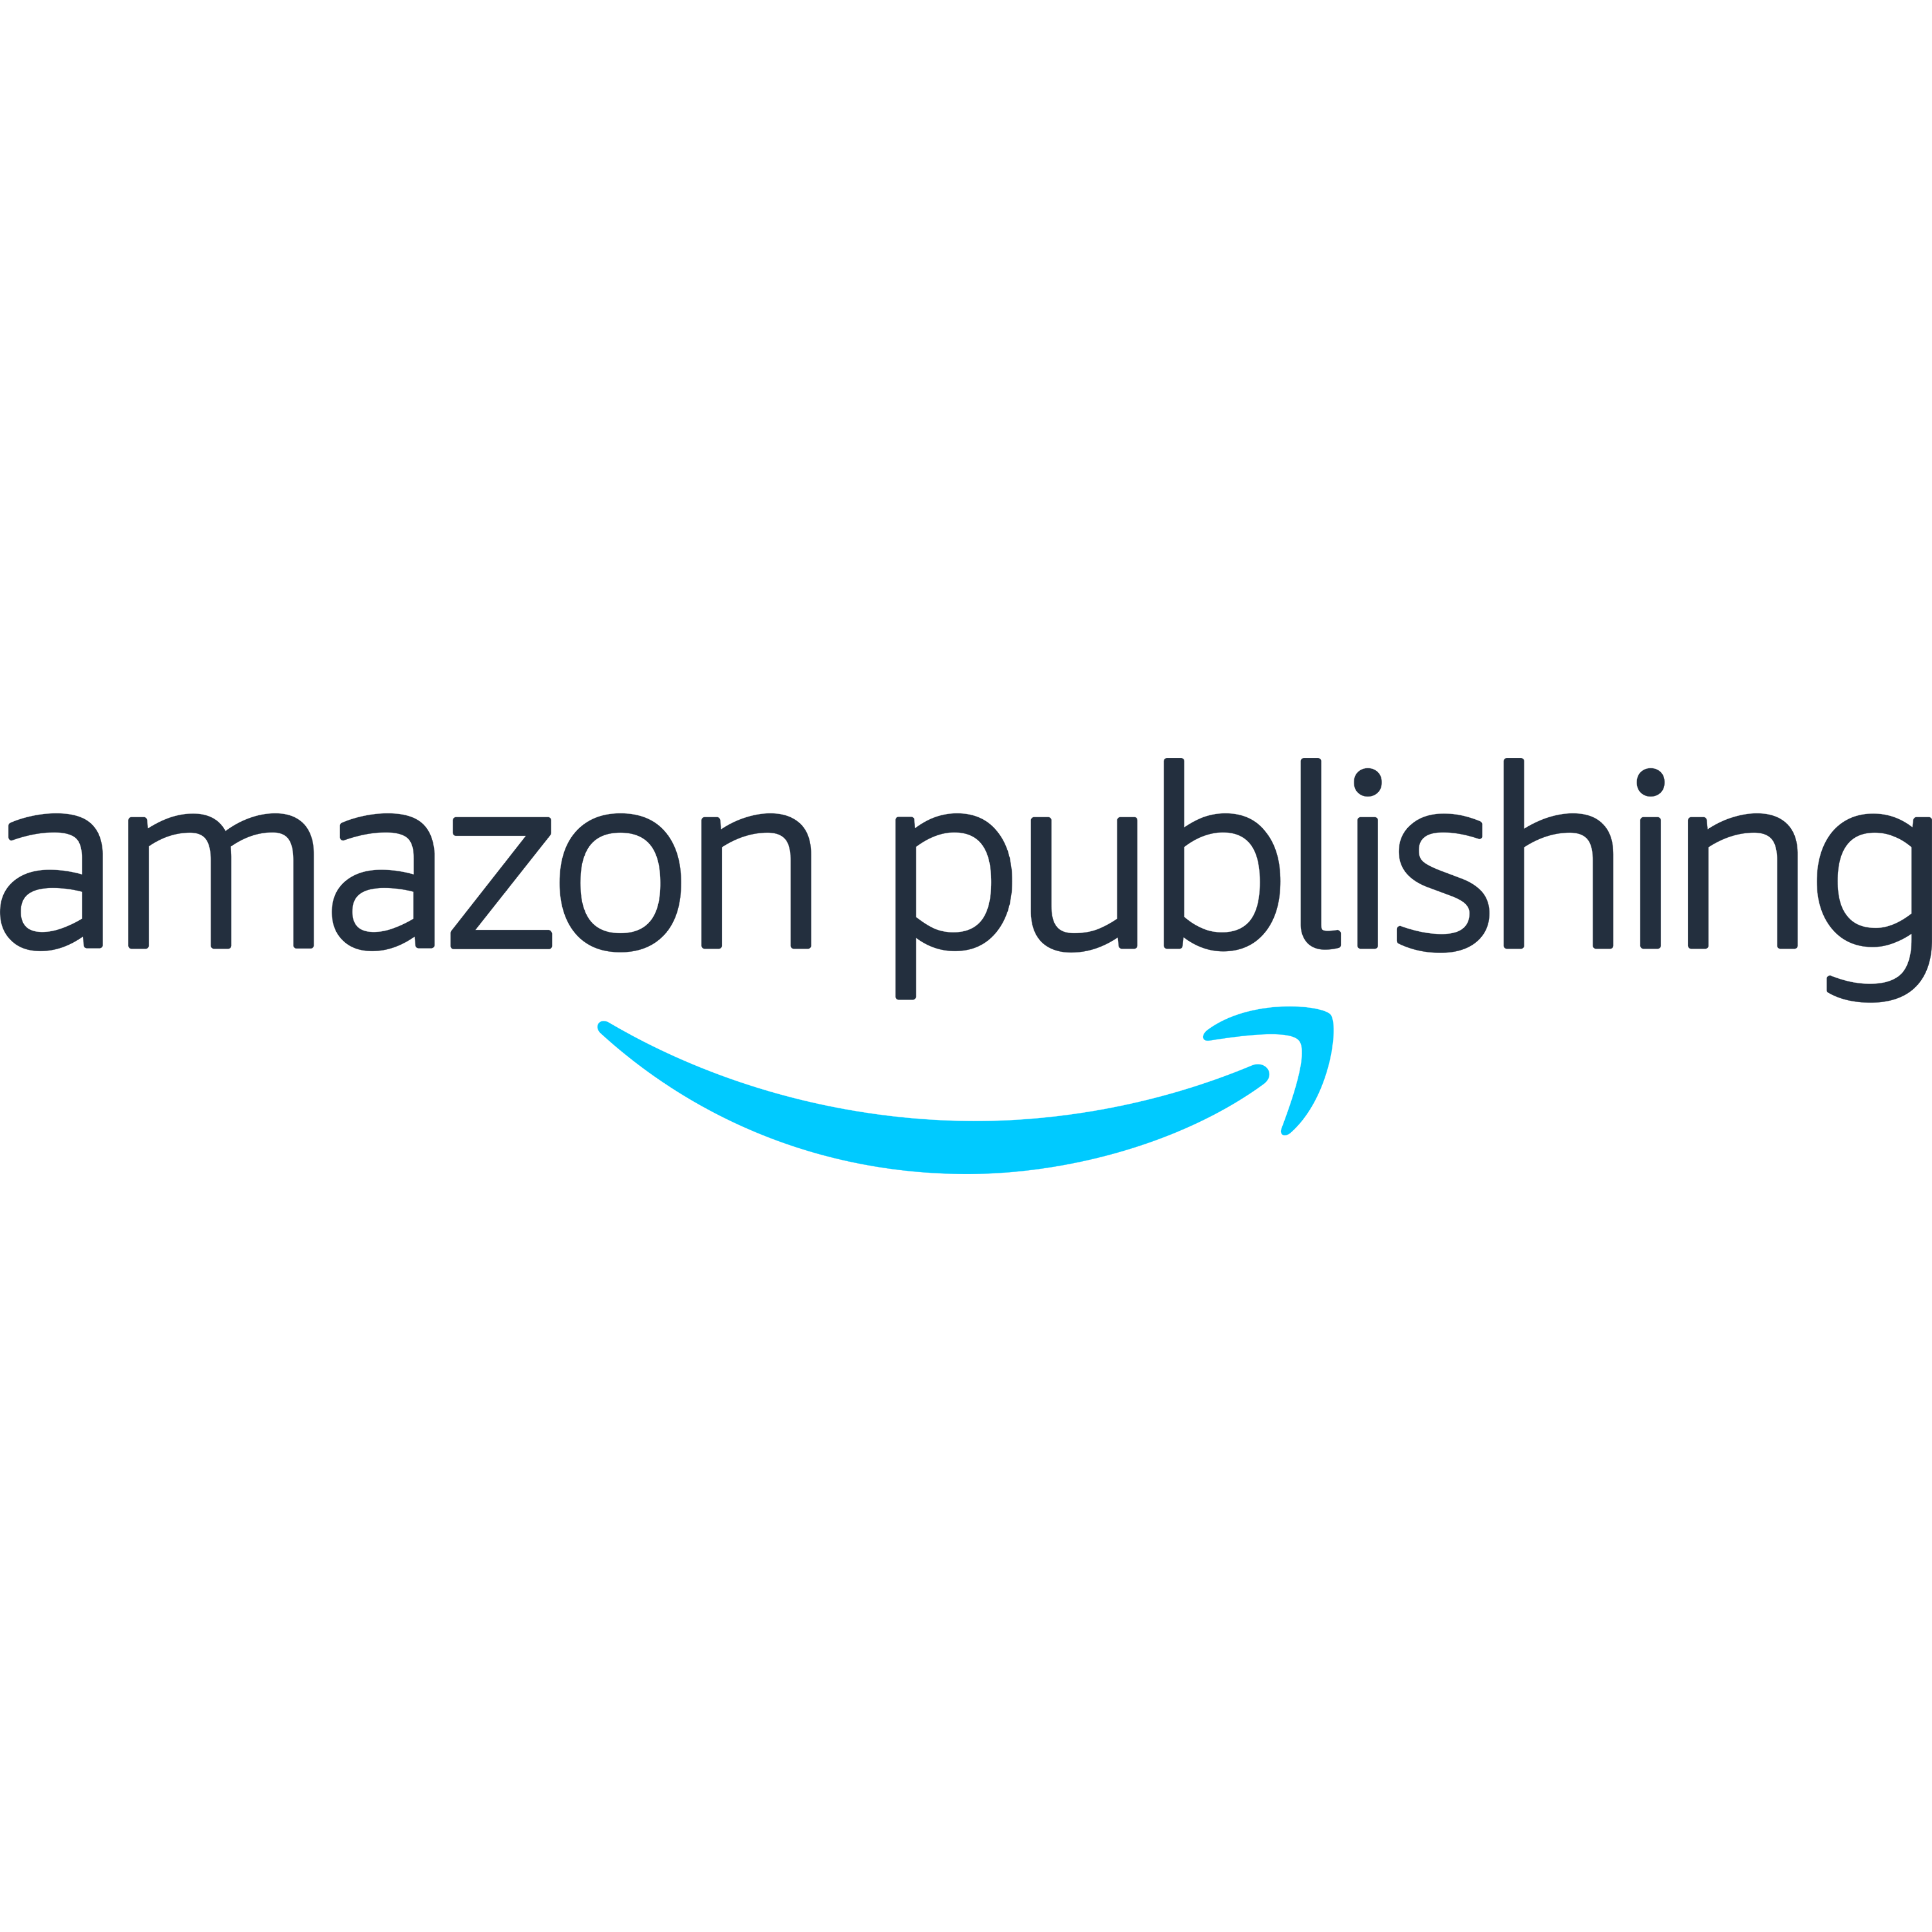 Amazon Publishing Logo Transparent Image